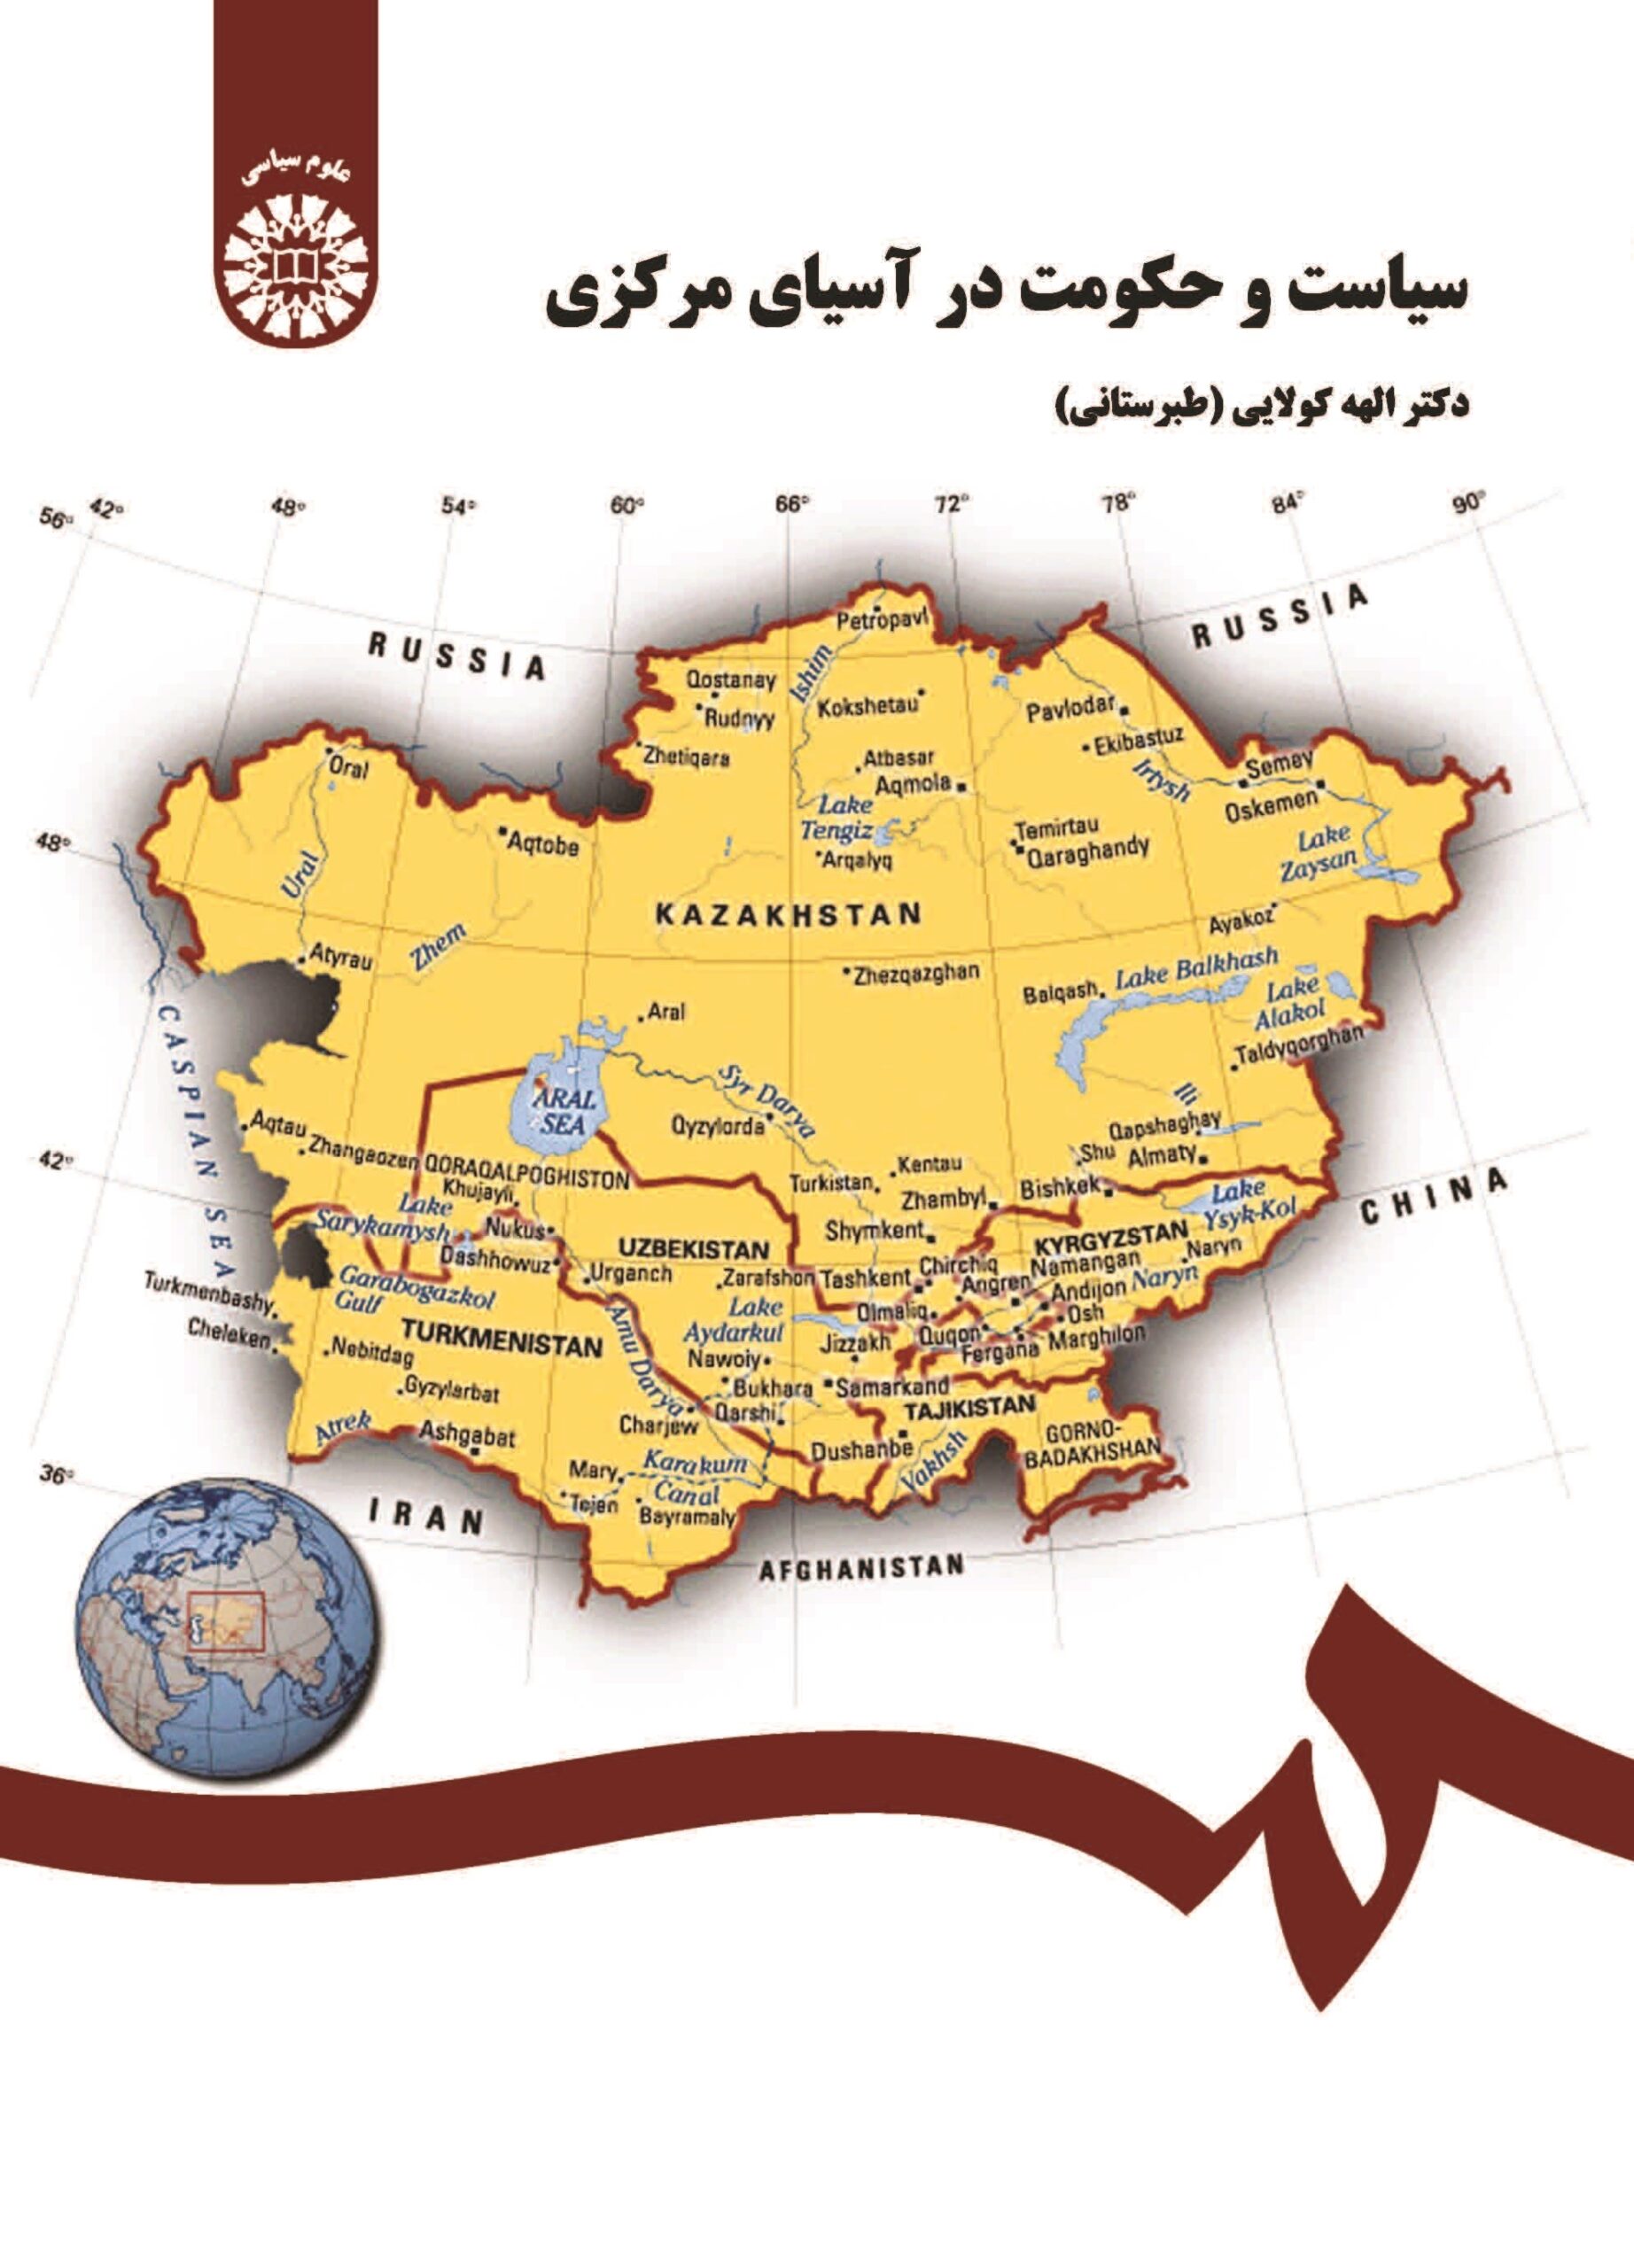 سیاست و حکومت در آسیای مرکزی